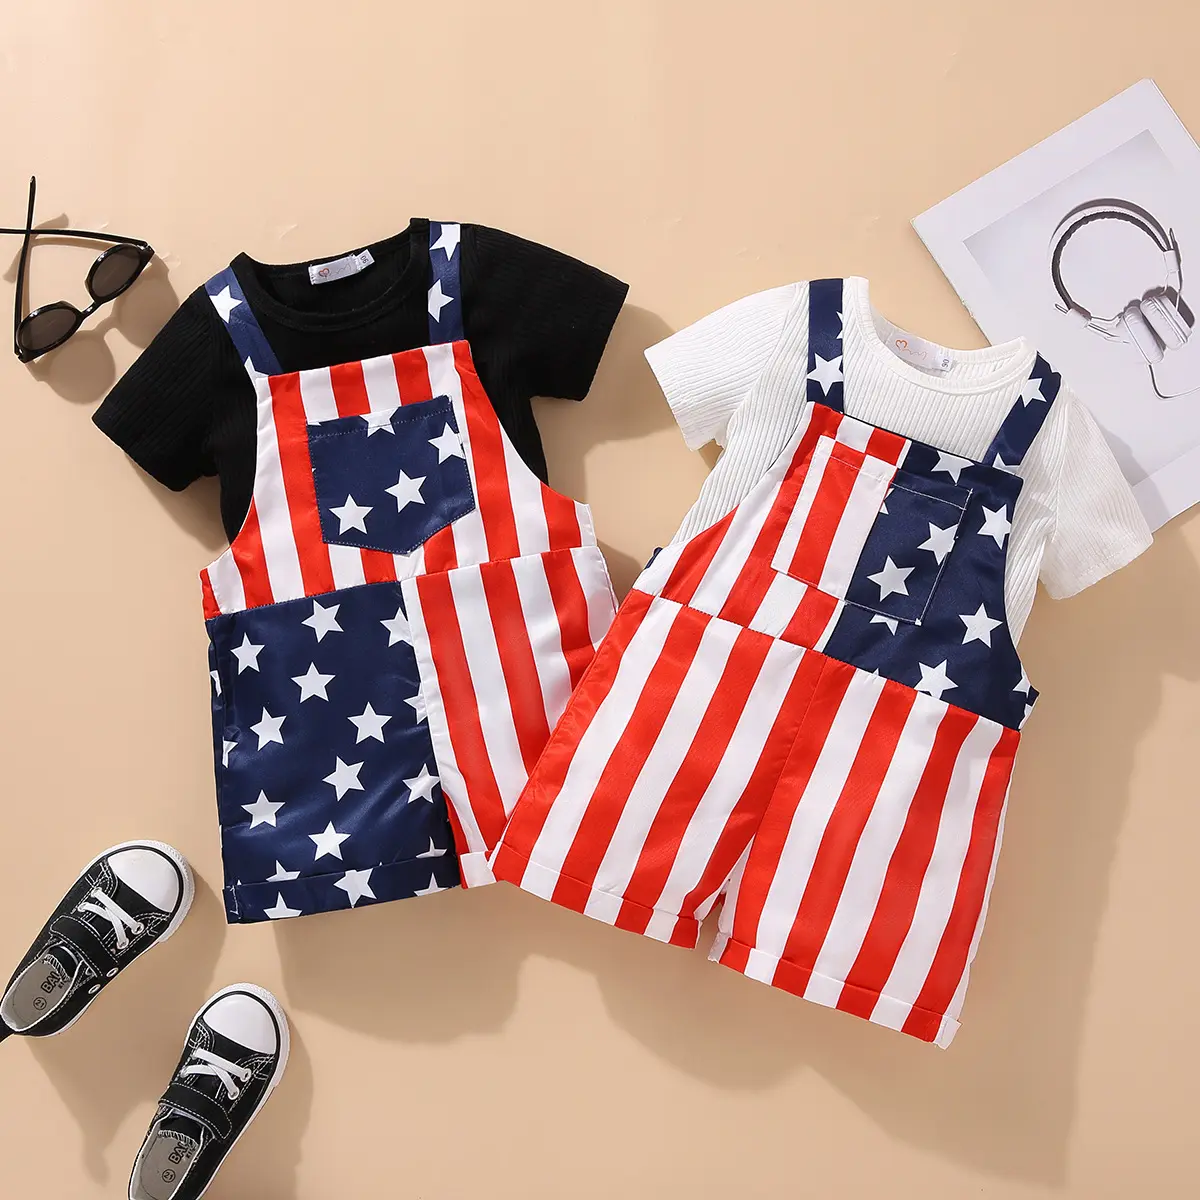 रेरेवे न्यू 4 जुलाई बच्चों के कपड़े देशभक्तिपूर्ण यूएसए ध्वज सितारे धारियां बेबी बॉय गर्ल सस्पेंडर ट्राउजर शॉर्ट्स समग्र जंपसूट